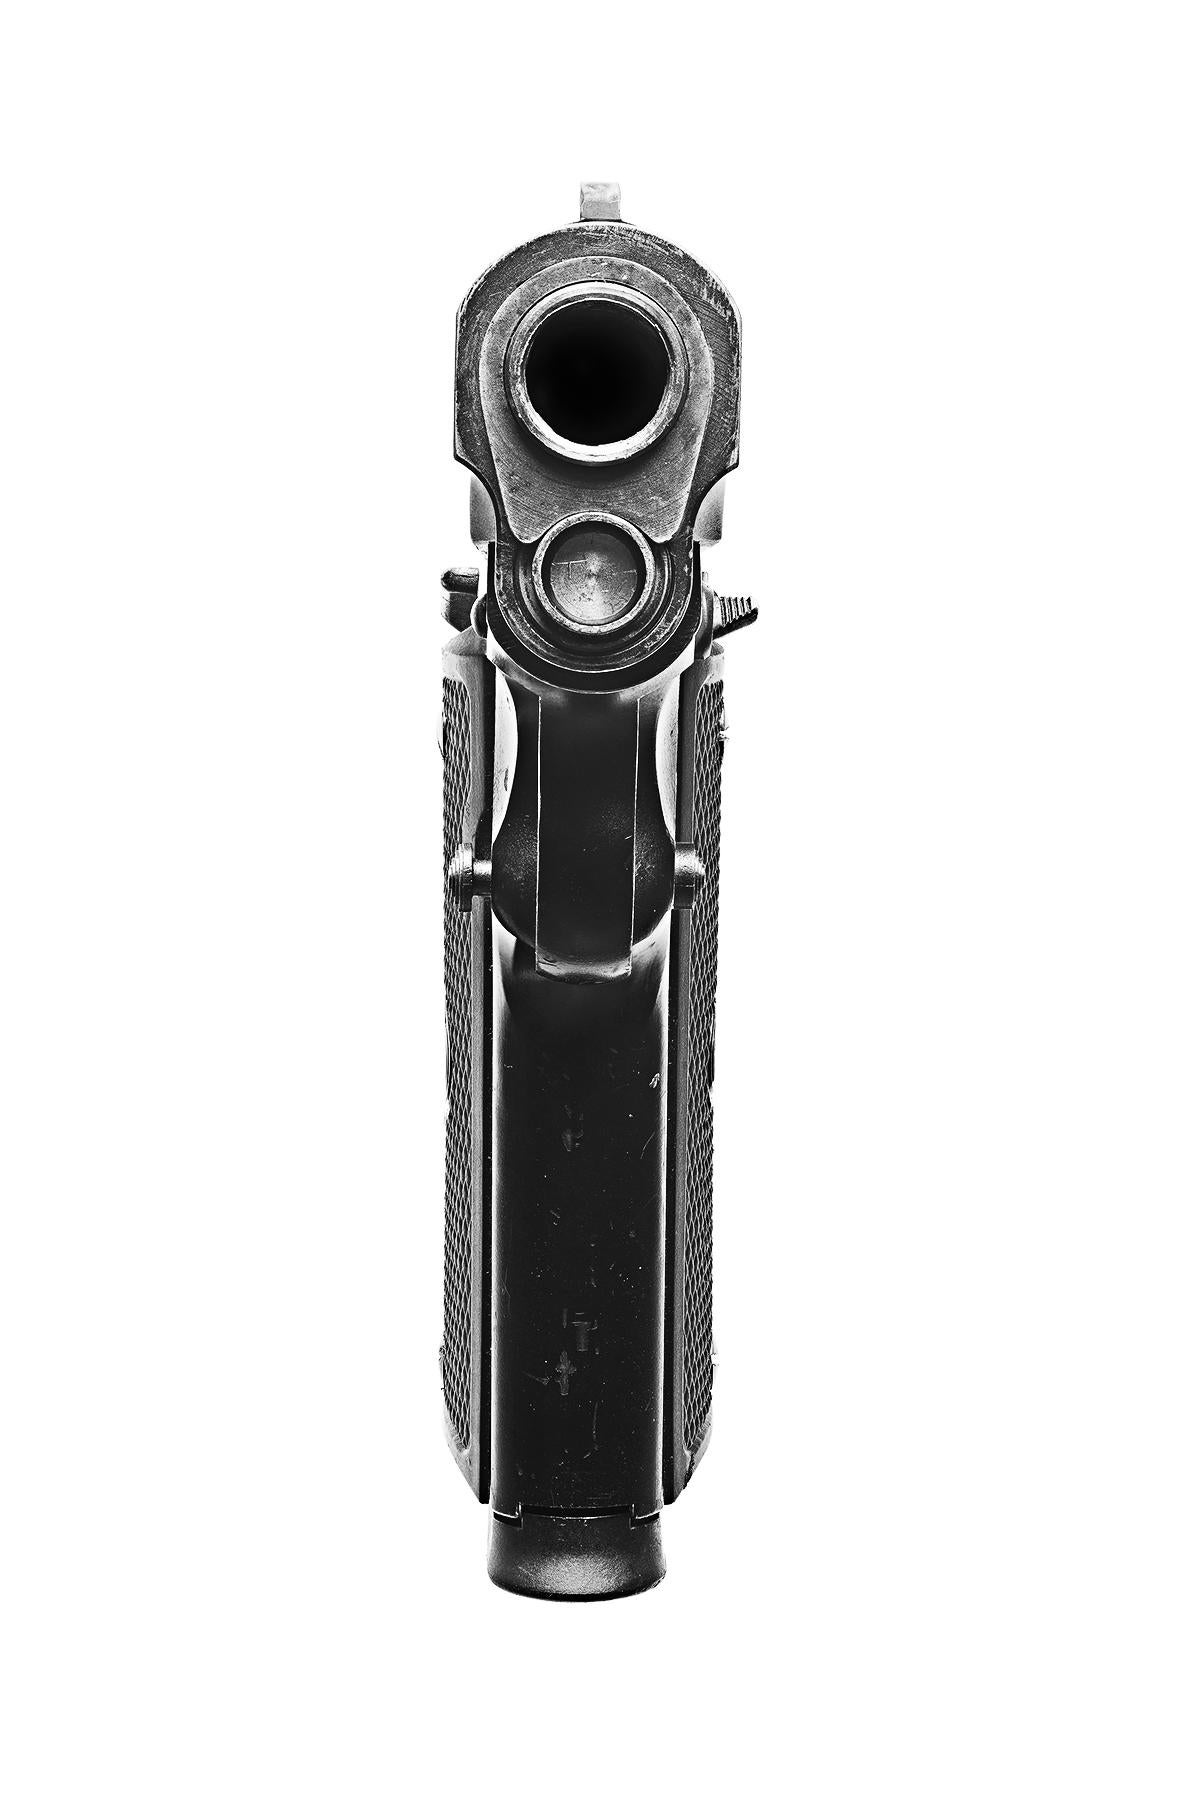 Colt 1911
C.C.I.C. / Impression pigmentaire d'archives
Edition de 20 exemplaires par format
Tailles disponibles :
36 x 72 pouces
48 x 96 pouces

Dans Point Blank, l'agrandissement des armes de poing par Lusztyk anthropomorphise et abstrait son sujet